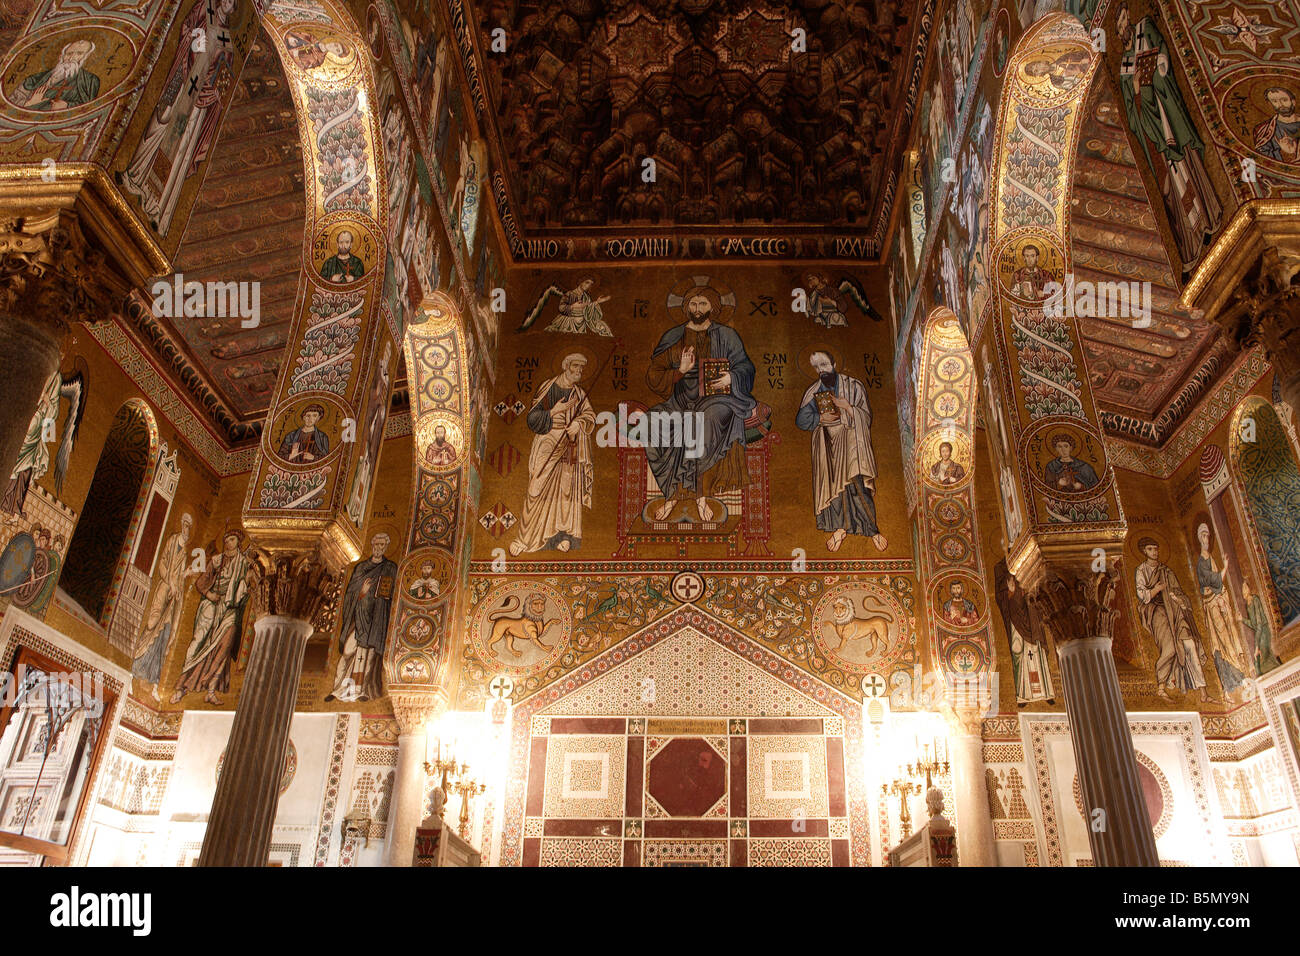 Capella Palatina montrant l'intérieur de mosaïques et de plafonds en bois, Palerme, Sicile Banque D'Images